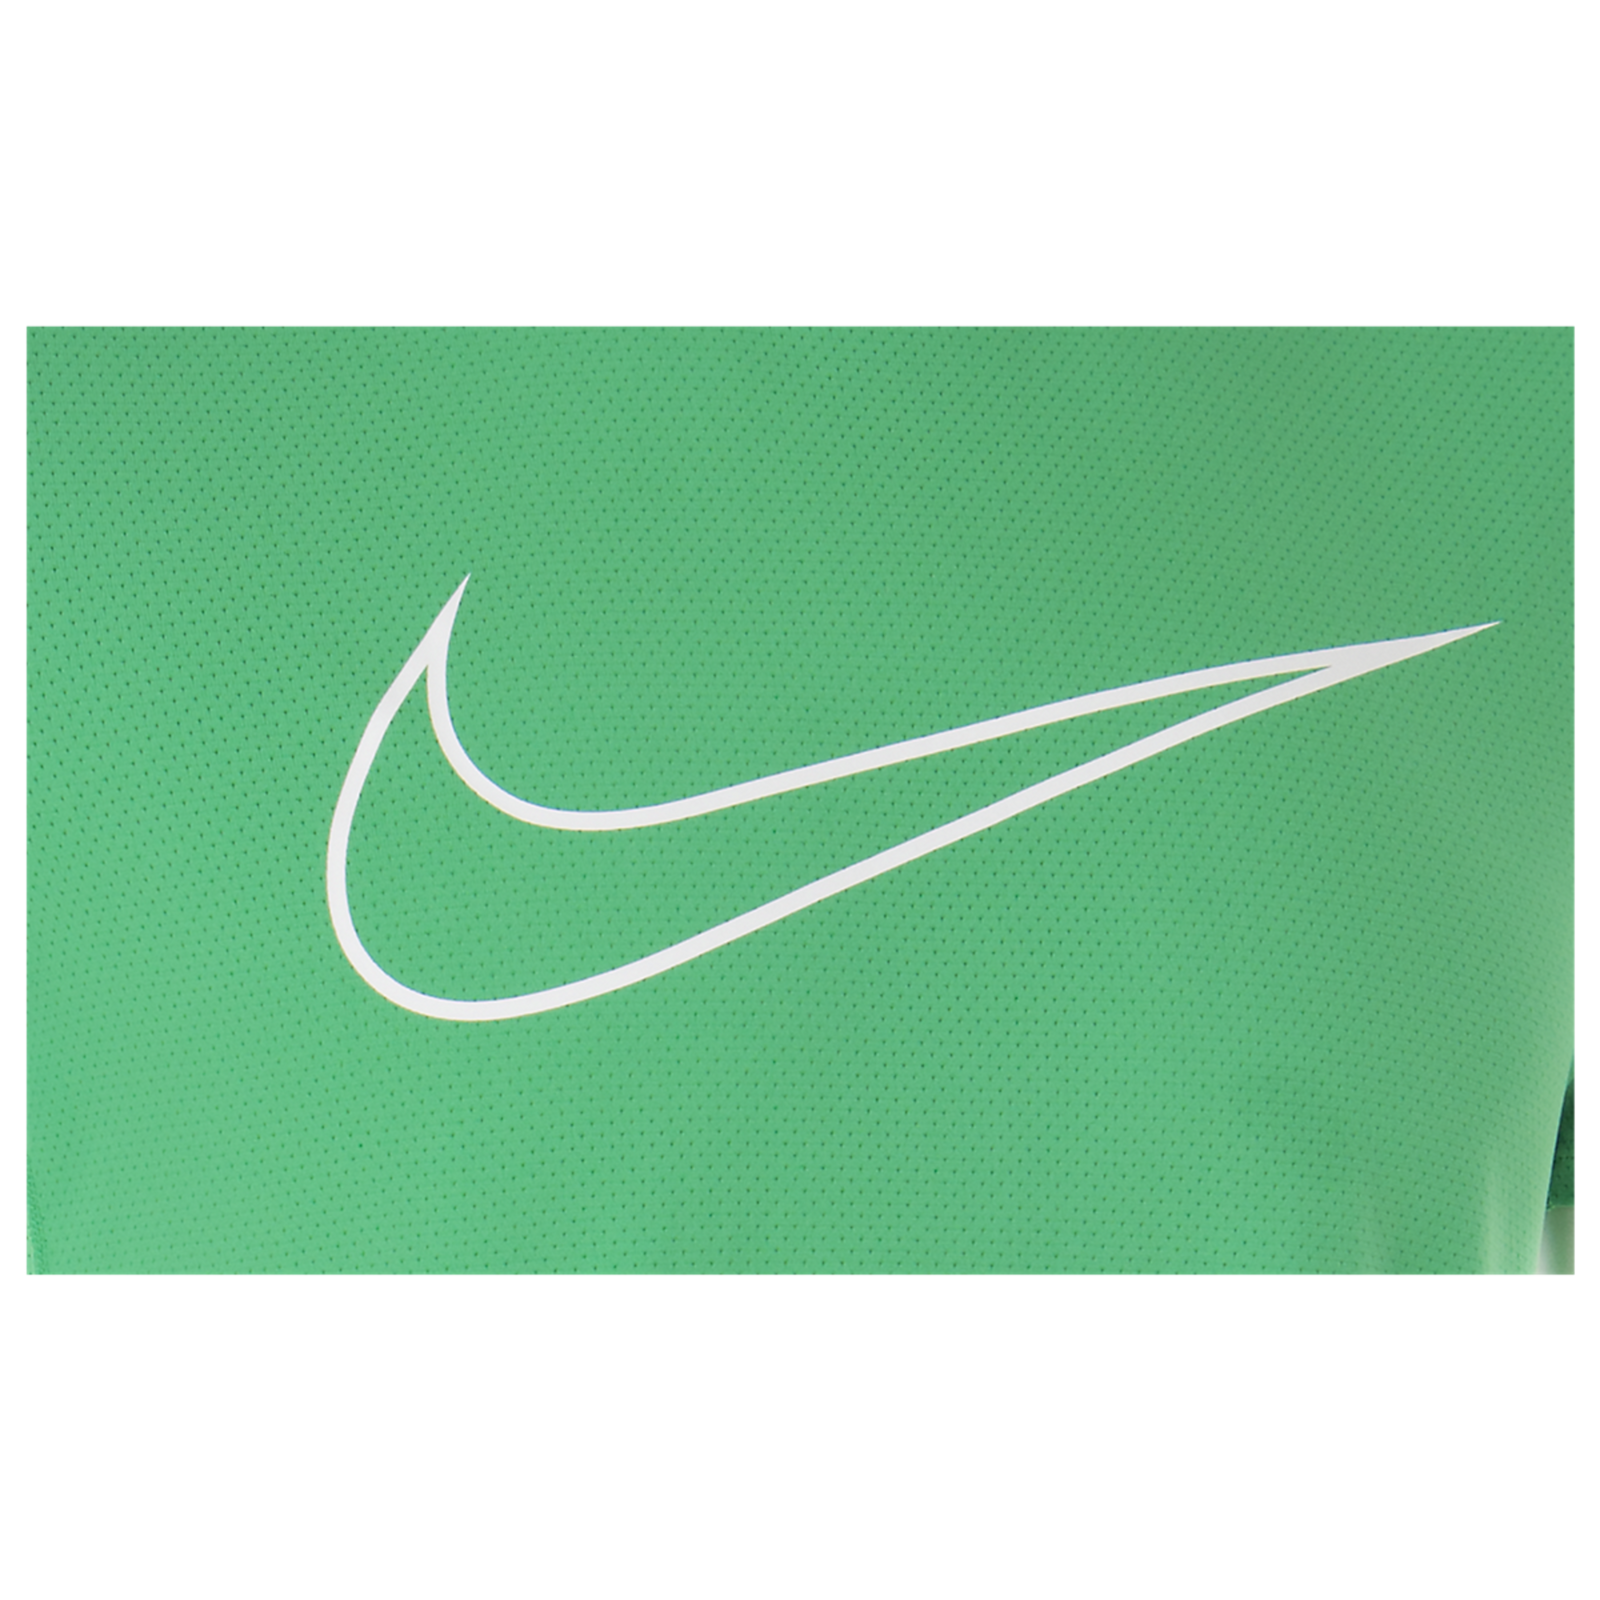 Nike Graphic Contour (Dri-FIT) - 724234-342 - Sneakerhead.com ...